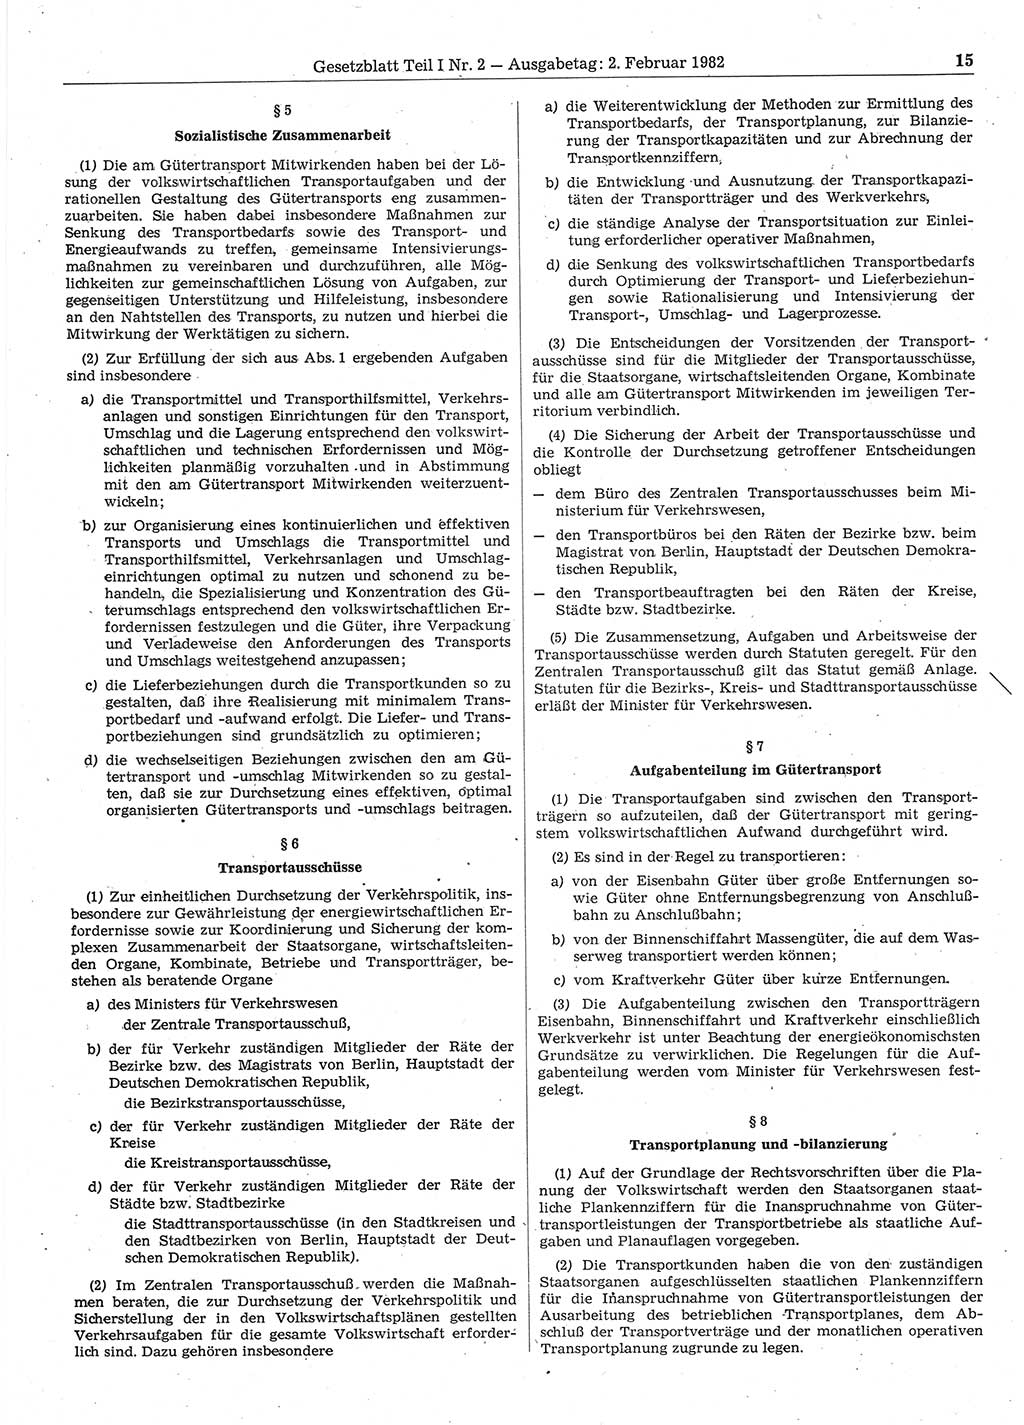 Gesetzblatt (GBl.) der Deutschen Demokratischen Republik (DDR) Teil Ⅰ 1982, Seite 15 (GBl. DDR Ⅰ 1982, S. 15)